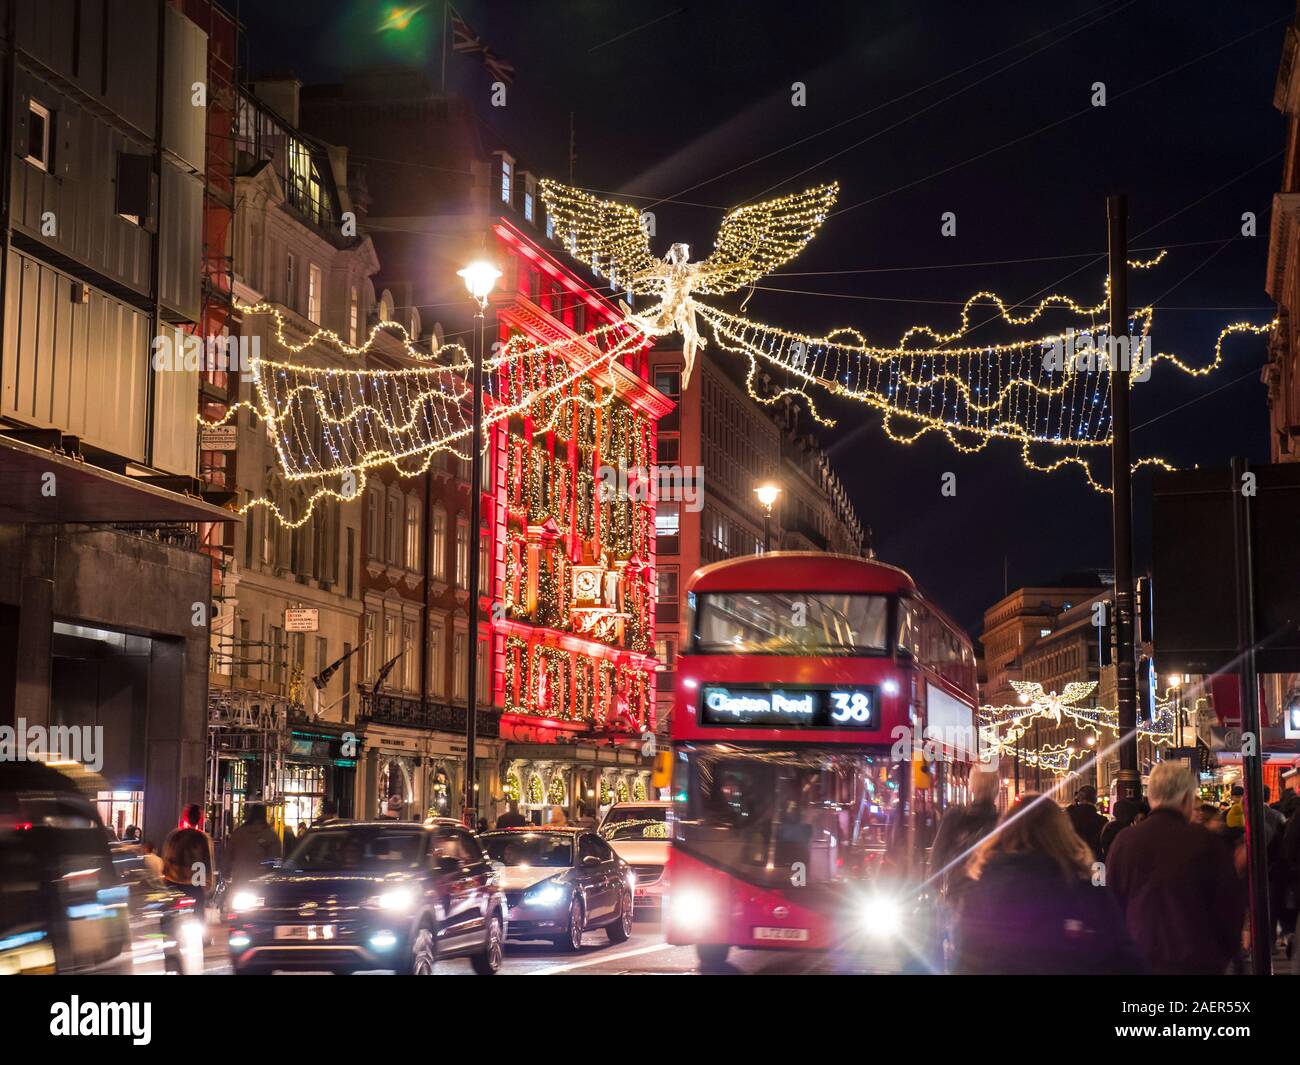 Natale Piccadilly di notte con Fortnum e Mason Store illuminato con calendario dell'Avvento il tema e il red hybrid London bus, acquirenti e il traffico con il Natale Golden Angel luminarie di luci di Piccadilly London REGNO UNITO Foto Stock